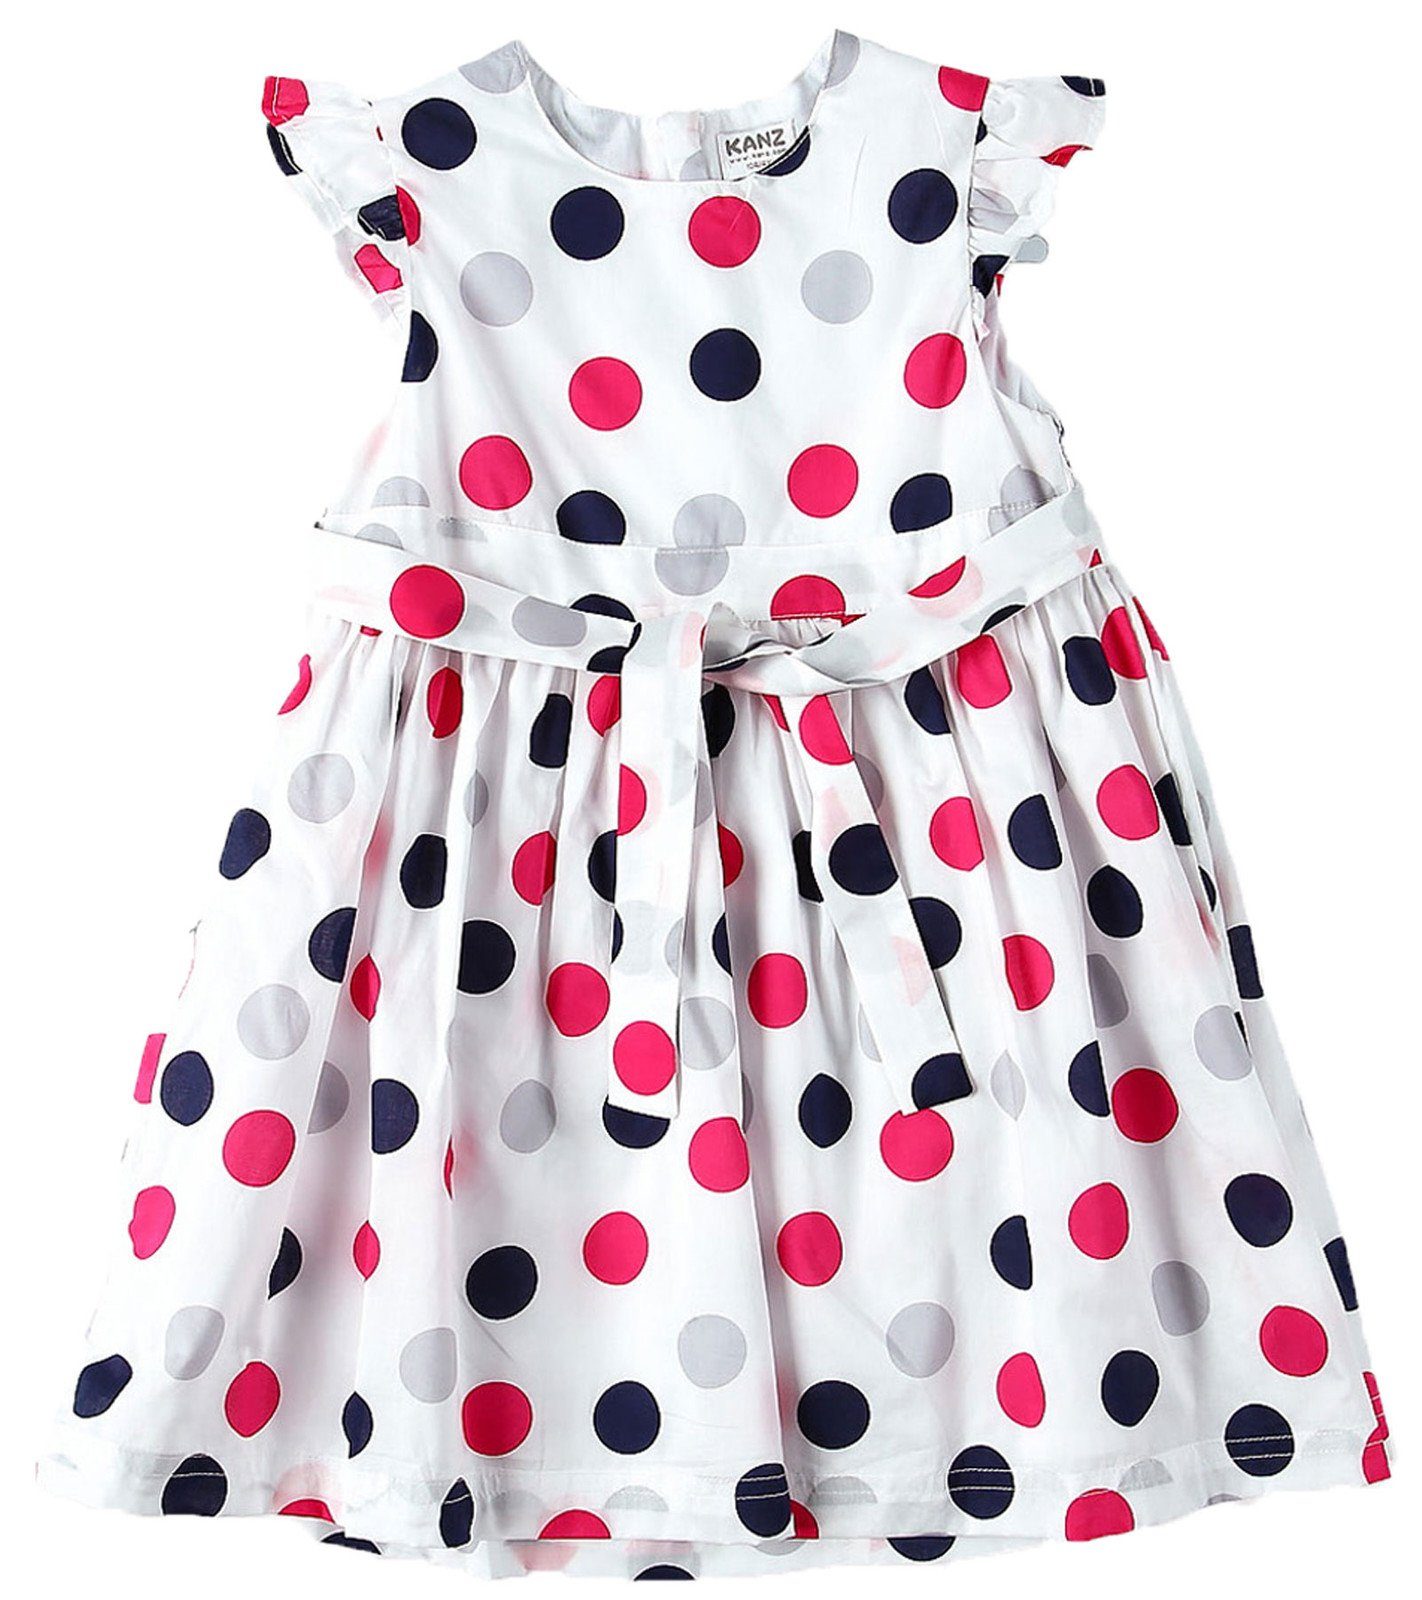 Kanz Minikleid Kinder Punkte-Muster Weiß Kurzarm-Kleid Rundhals-Kleid mit Mini-Kleid farbenfrohes KANZ